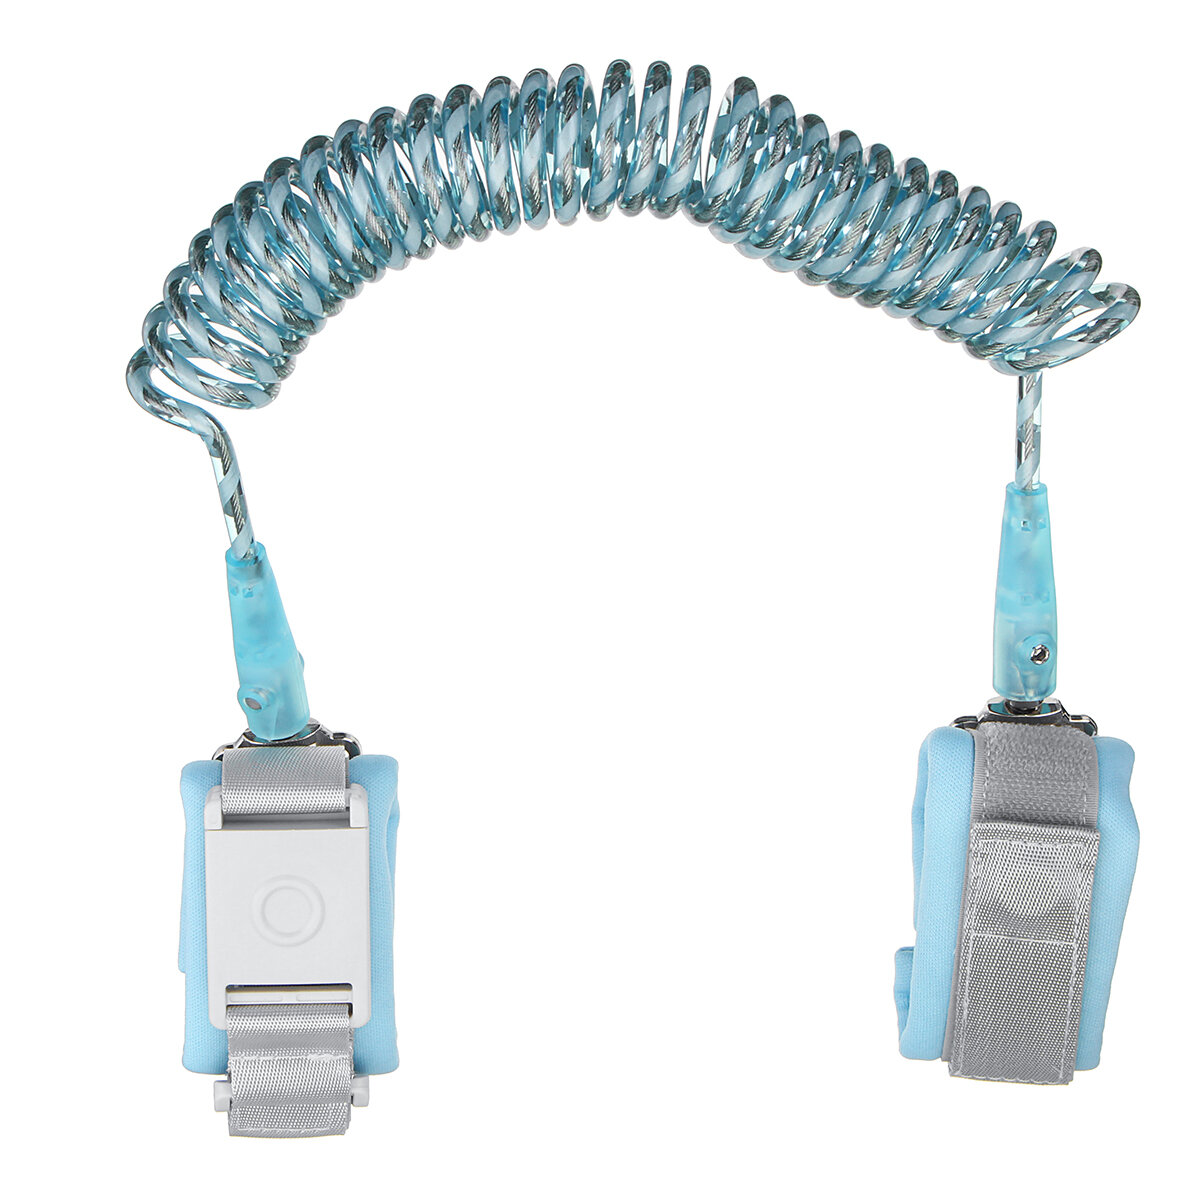 Bracelet de sécurité anti-perte pour enfants avec sangle réglable, corde réfléchissante, tête rotative et verrouillage par induction de 1,5 m, 2 m ou 2,5 m.